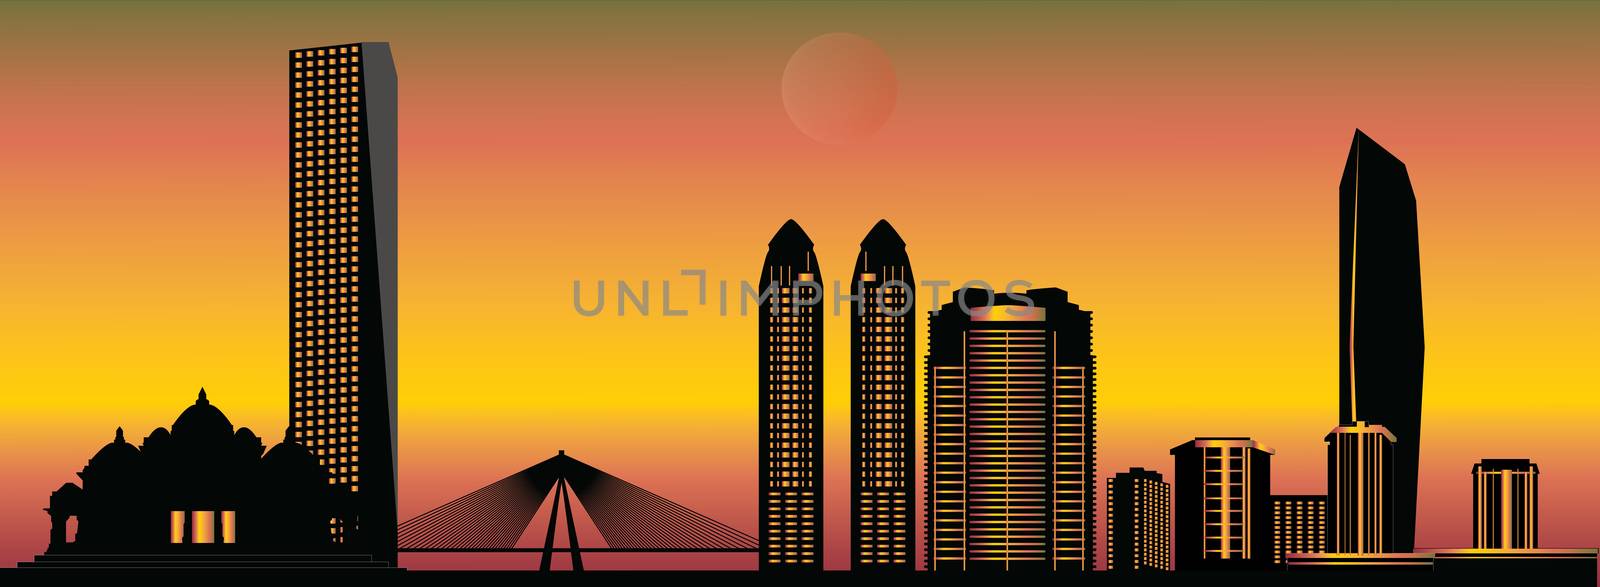 mumbai skyline by compuinfoto